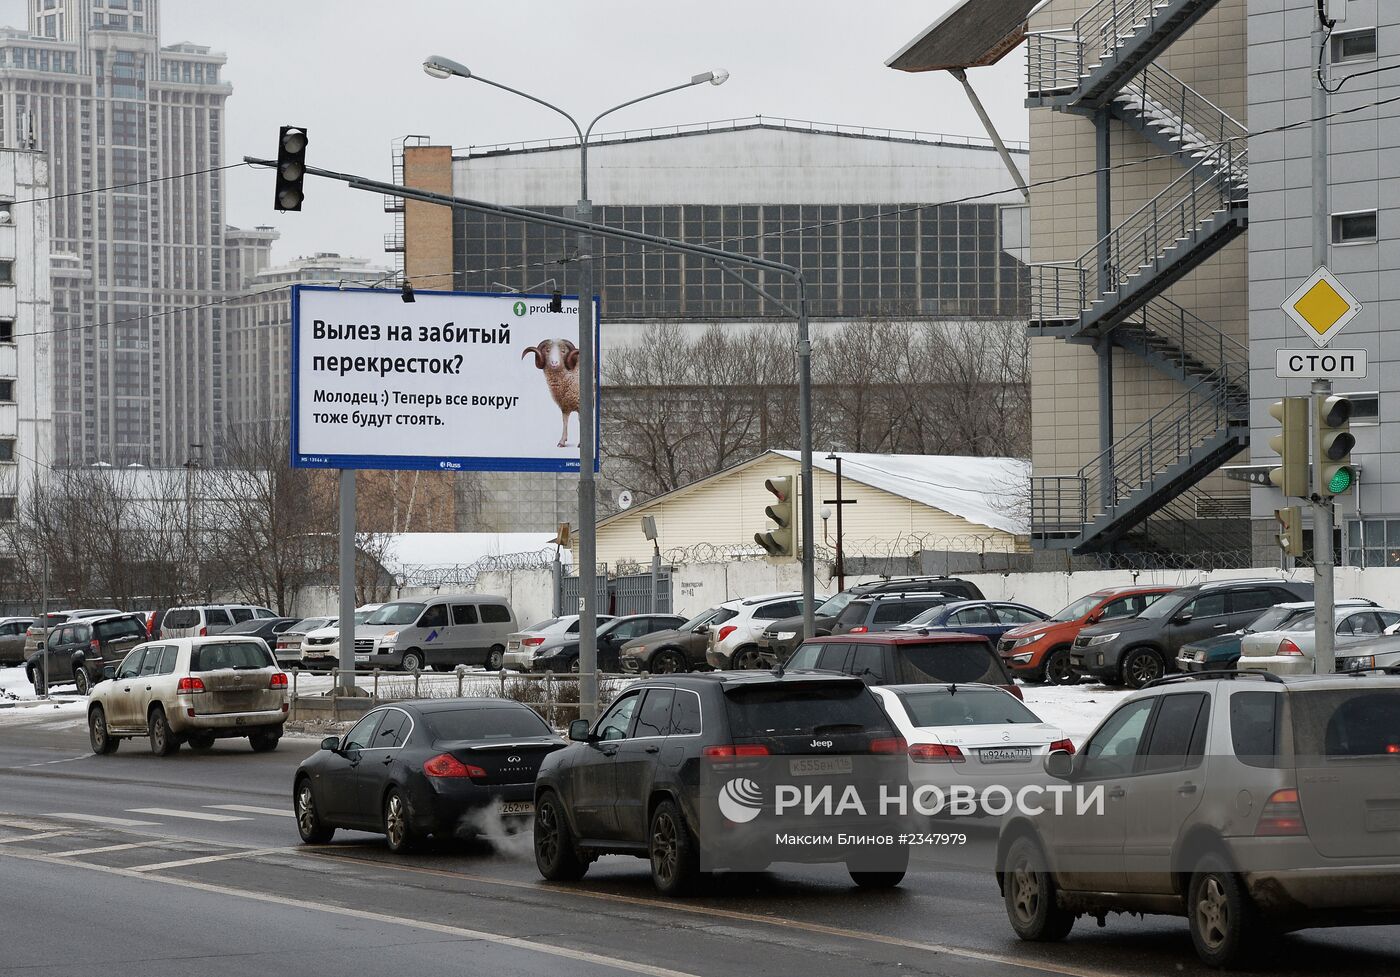 В Москве появились баннеры, высмеивающие нарушителей дорожного движения